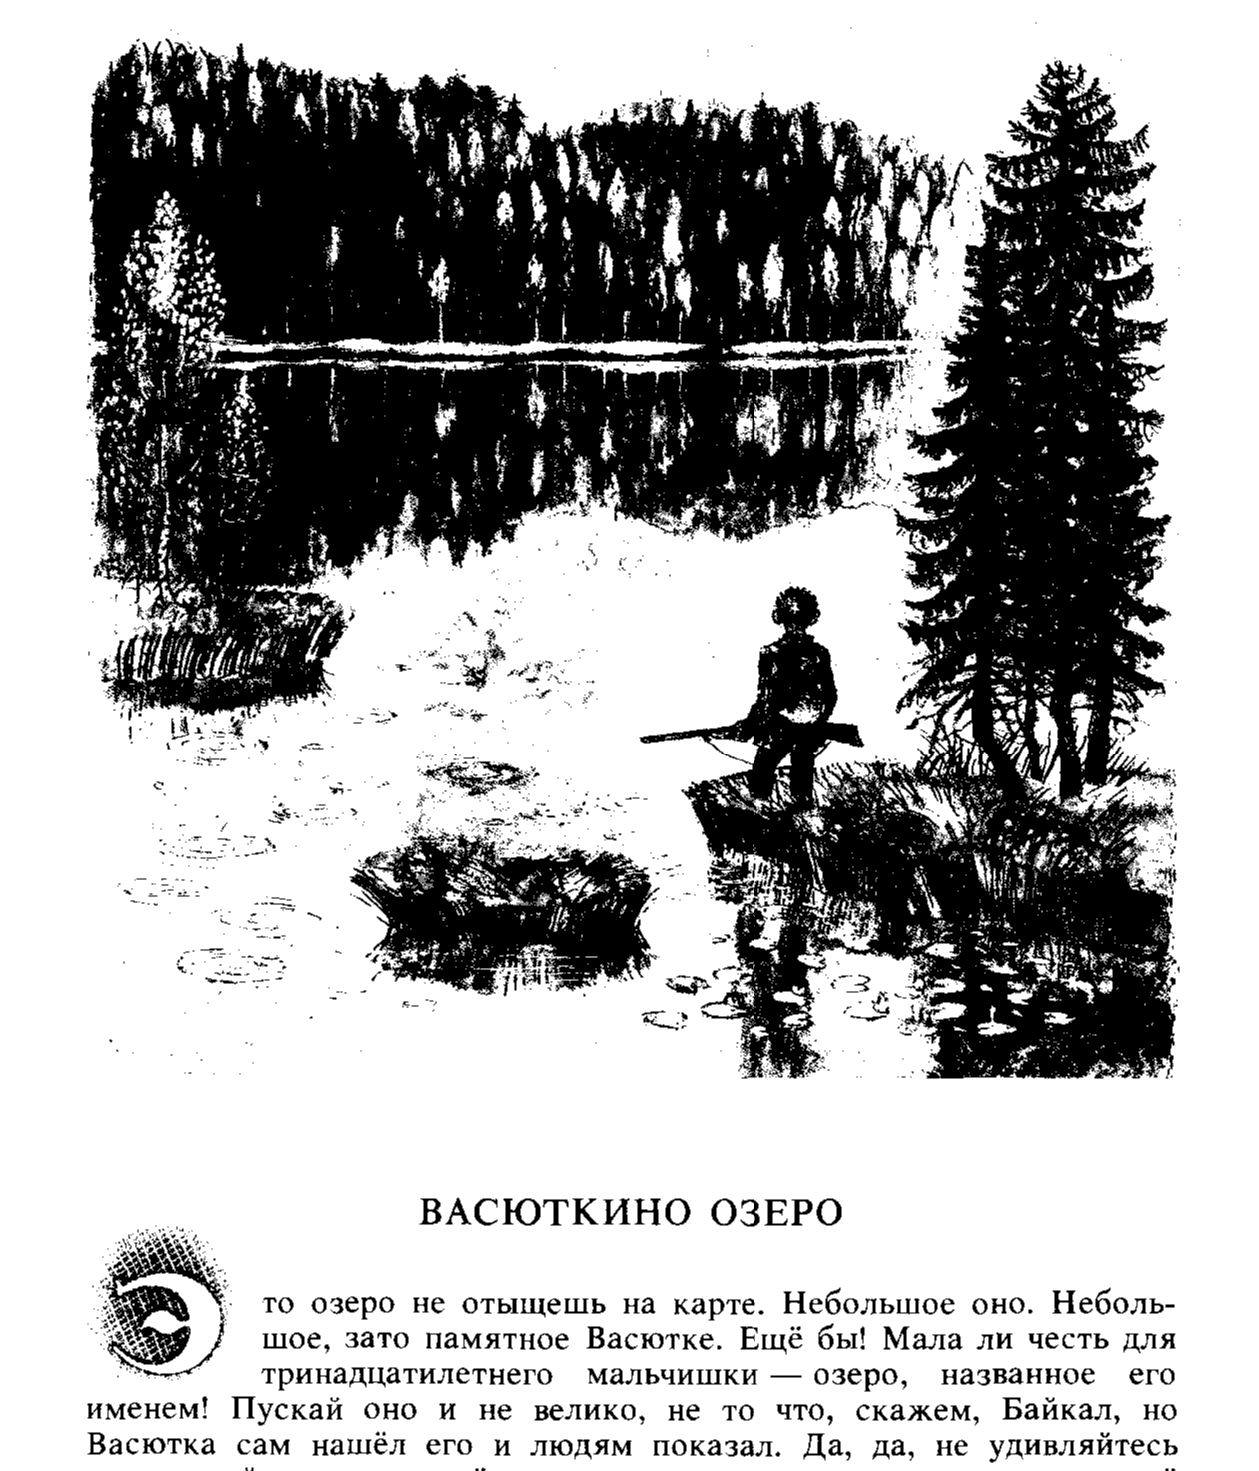 Васютка нашел озеро в лесу. Астафьев Васюткино озеро раскраска. Иллюстрации к книге Васюткино озеро. Иллюстрация к рассказу Васютка Васюткино озеро.